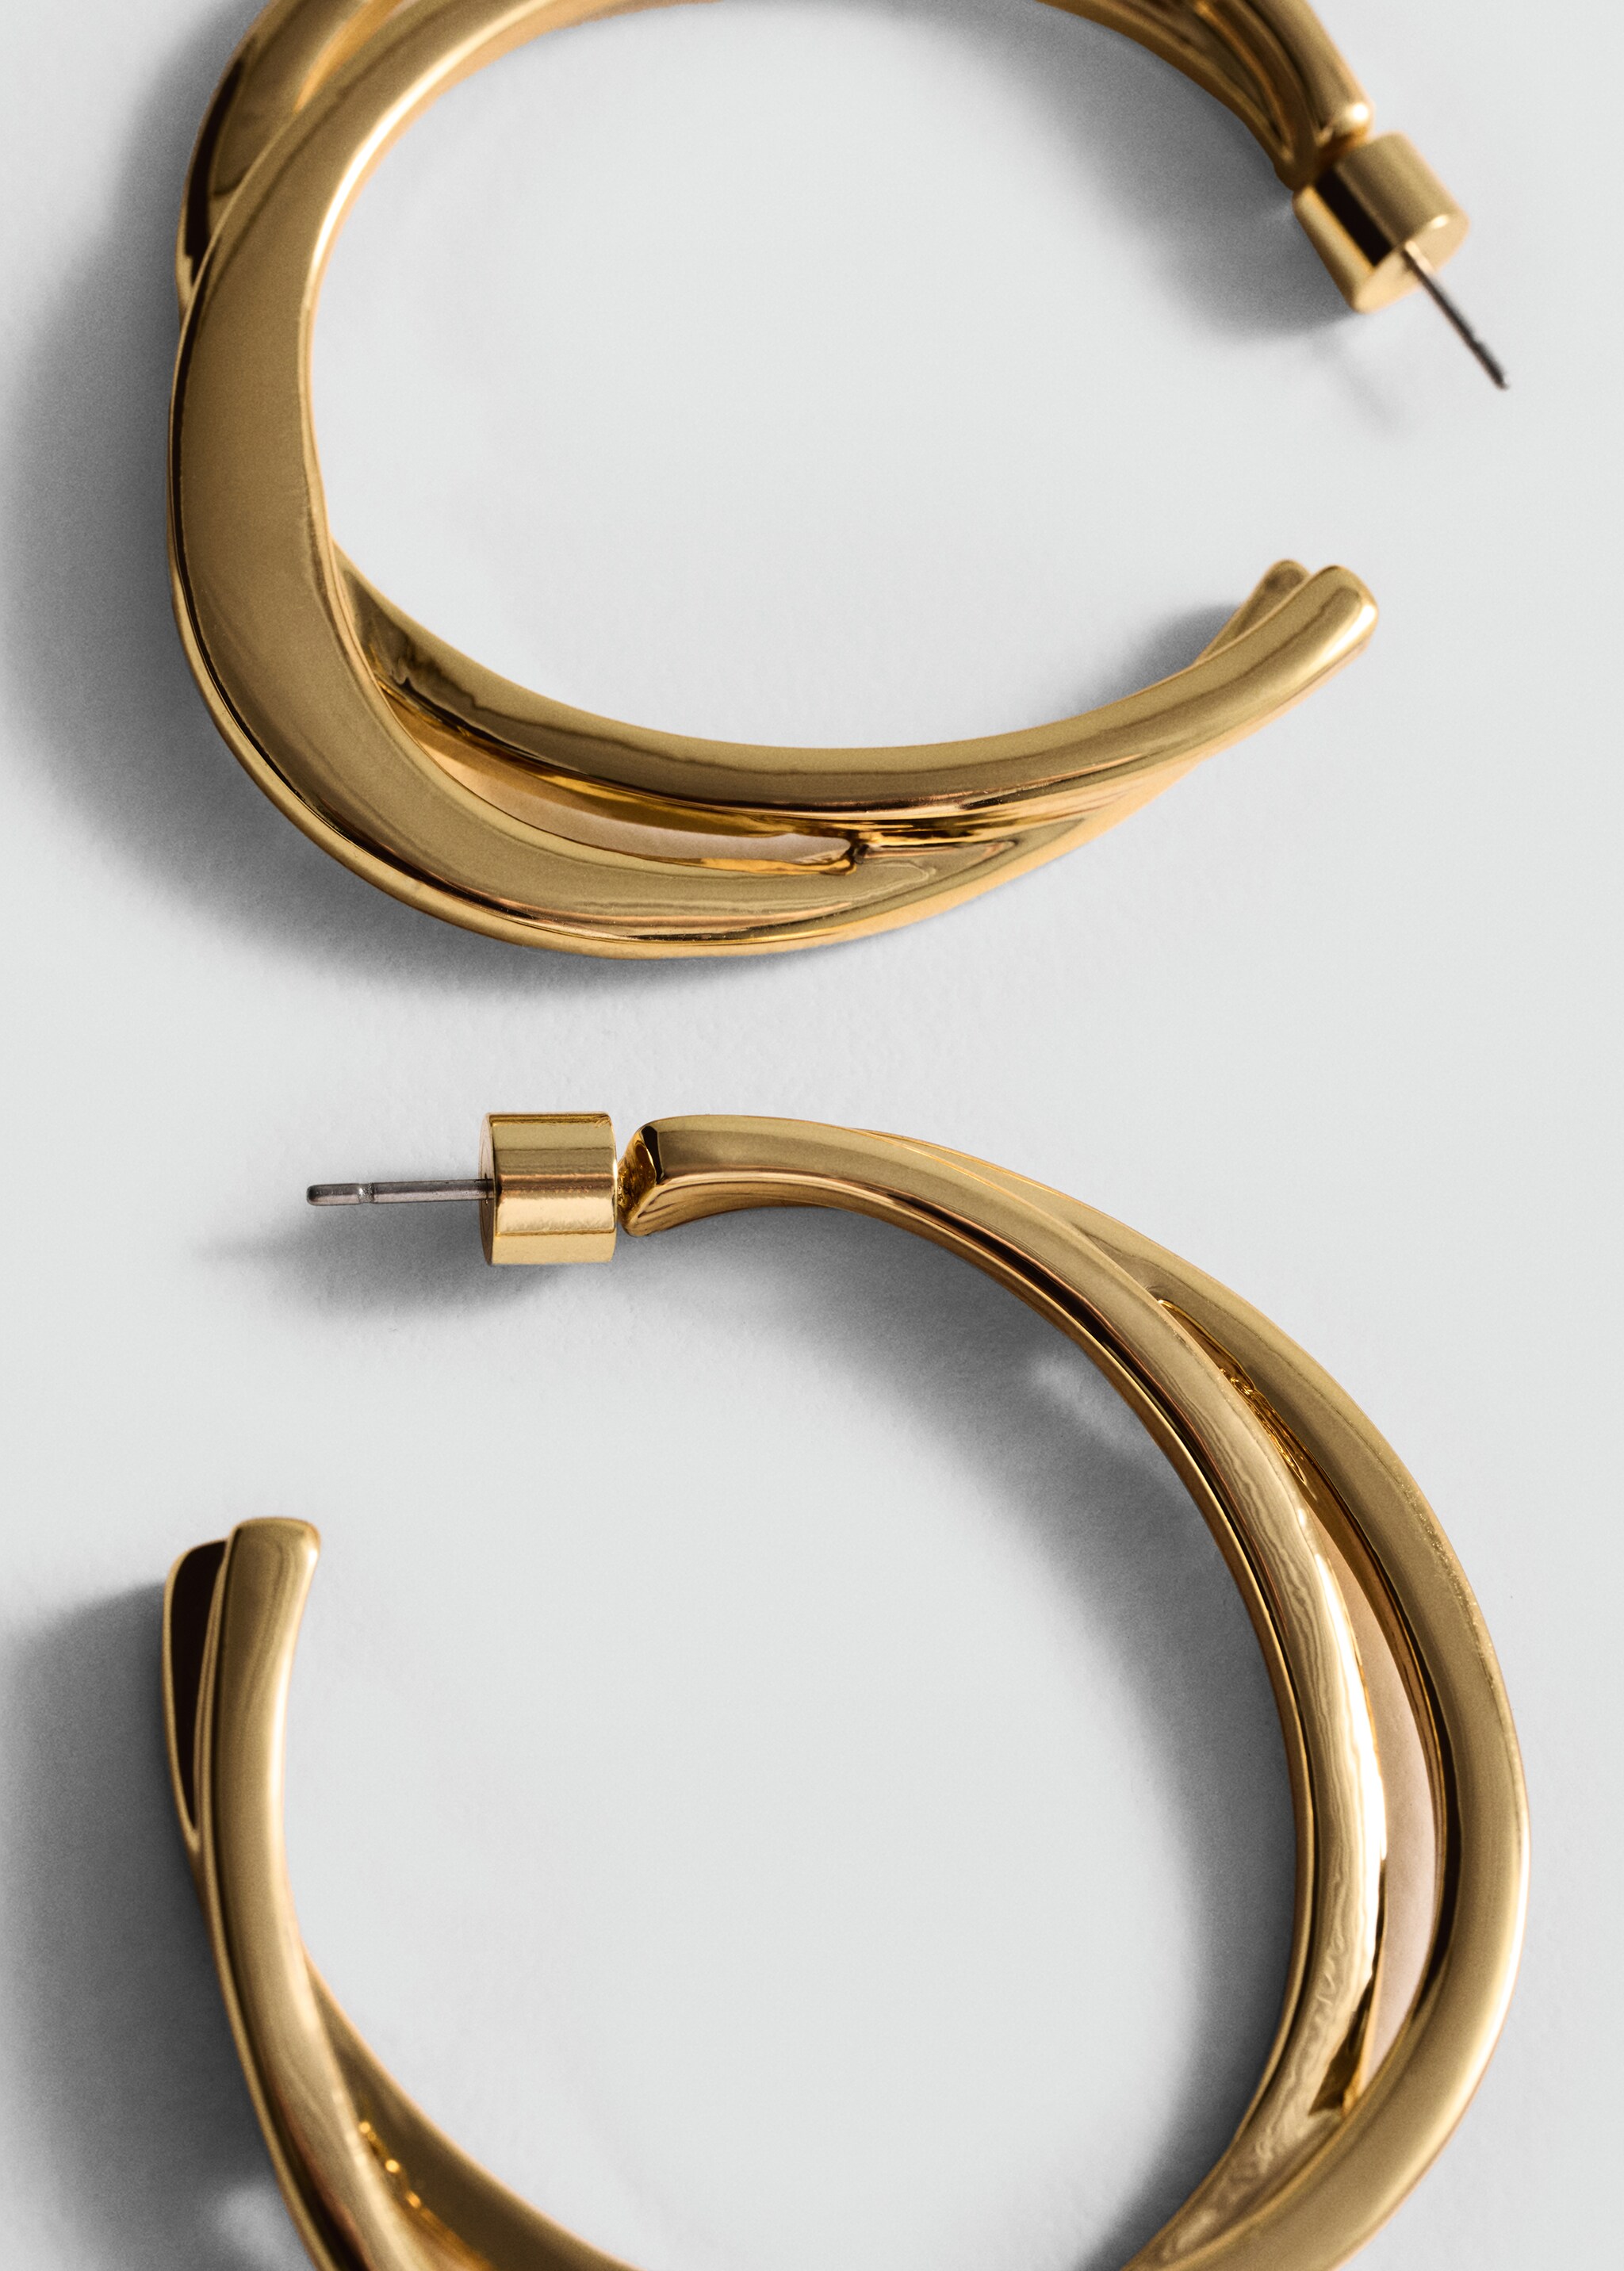 Intertwined hoop earrings - Medium plane